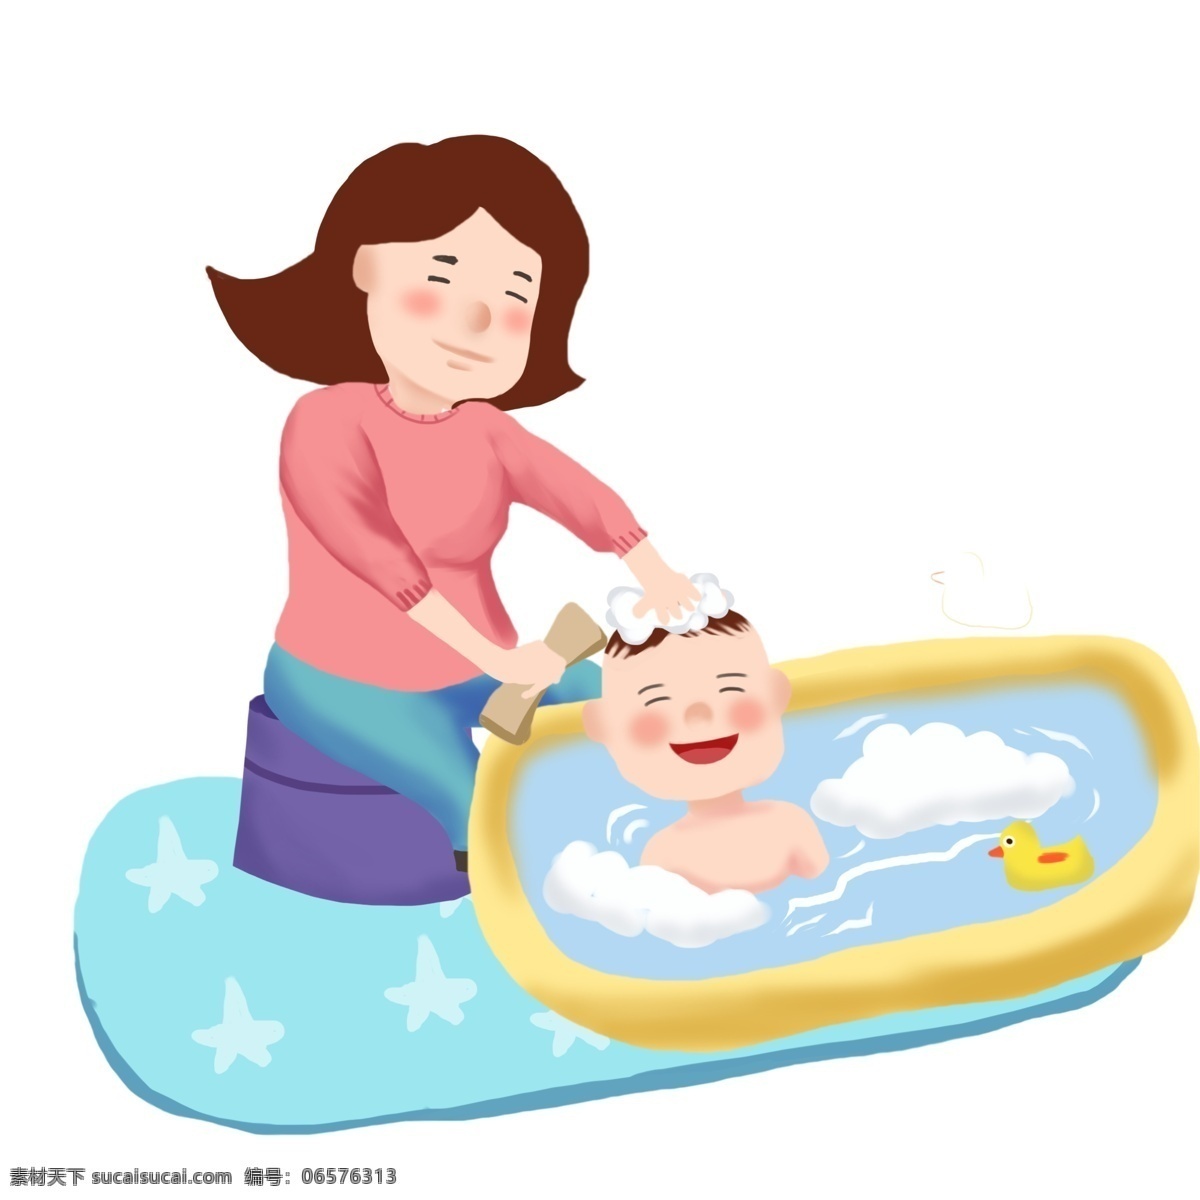 手绘 母婴 洗澡 插画 洗澡的孩子 蓝色的垫子 慈祥的母亲 卡通插画 黄色的澡盆 手绘母婴插画